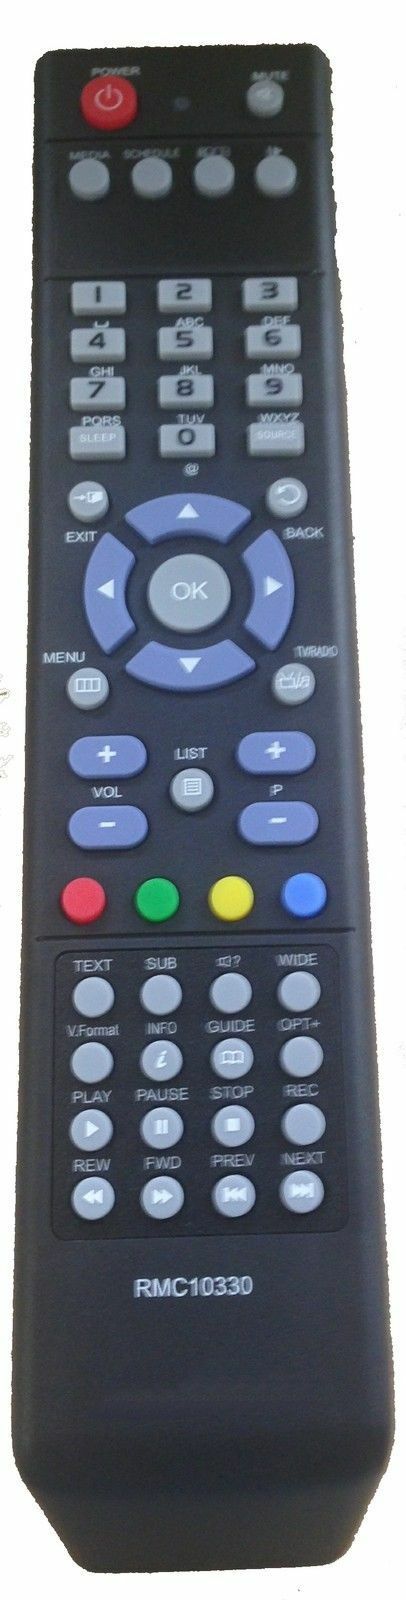 Replacement Remote Control for HD Box FS-9105/ FS-7110 / FS-7119 / FS 9105 HD +